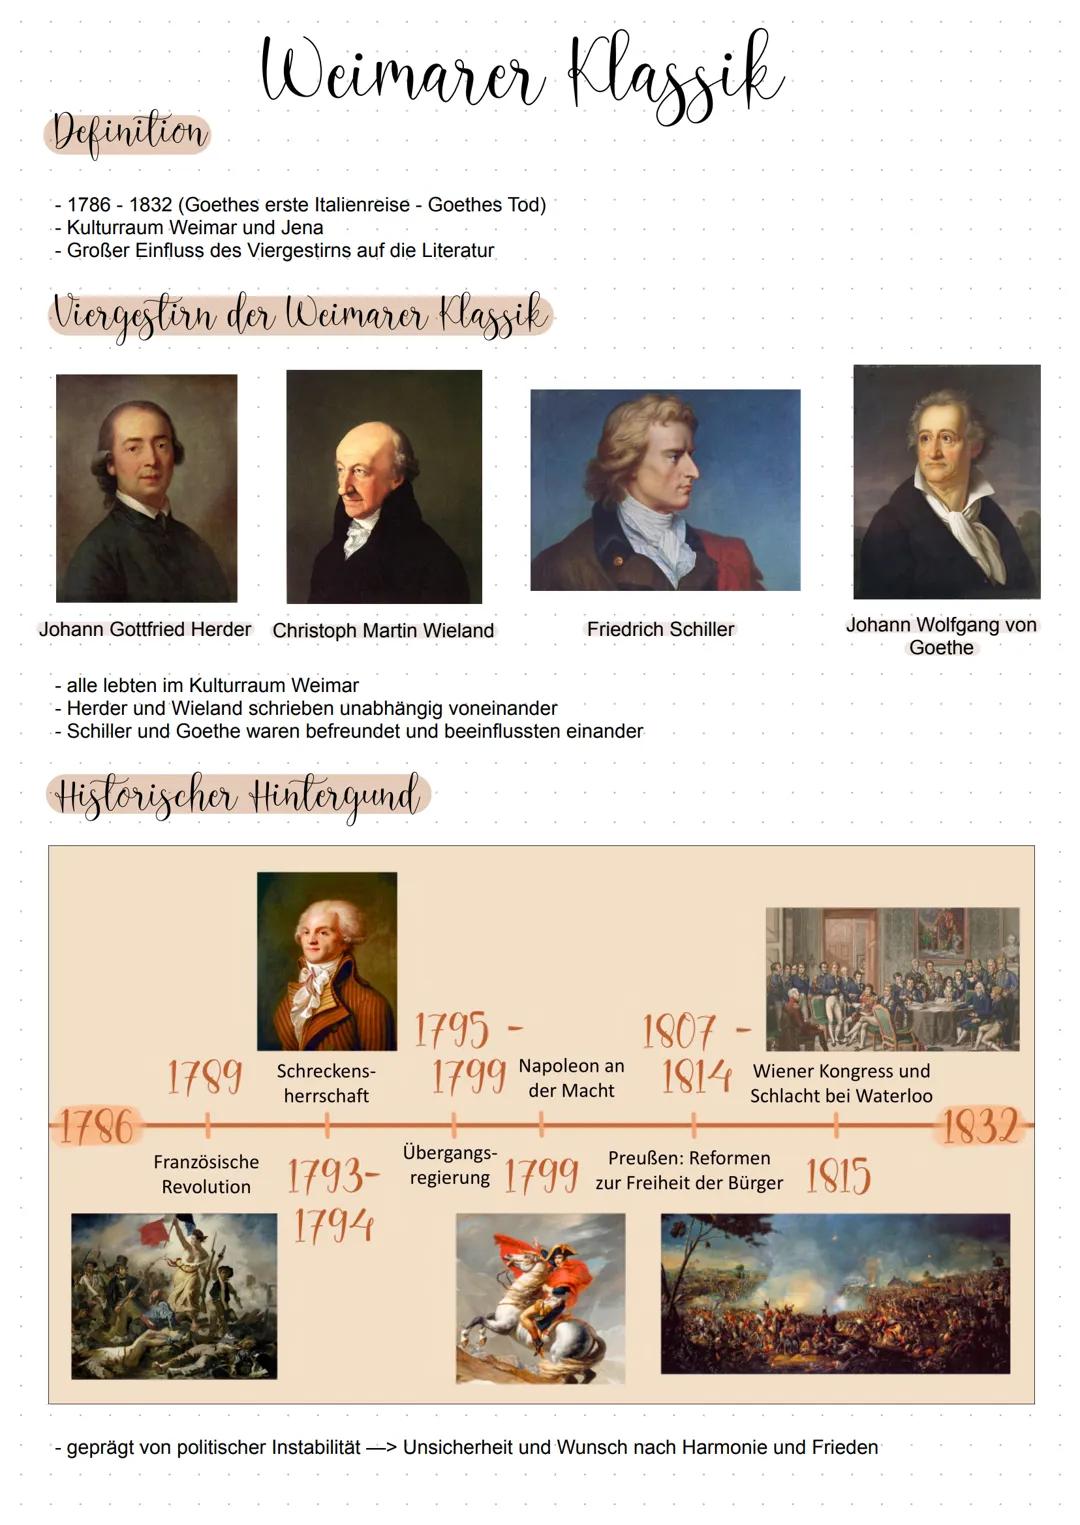 L
Weimarer
Klassik
L Weimarer Klassik
Definition
1786-1832 (Goethes erste Italienreise - Goethes Tod)
- Kulturraum Weimar und Jena
- Großer 